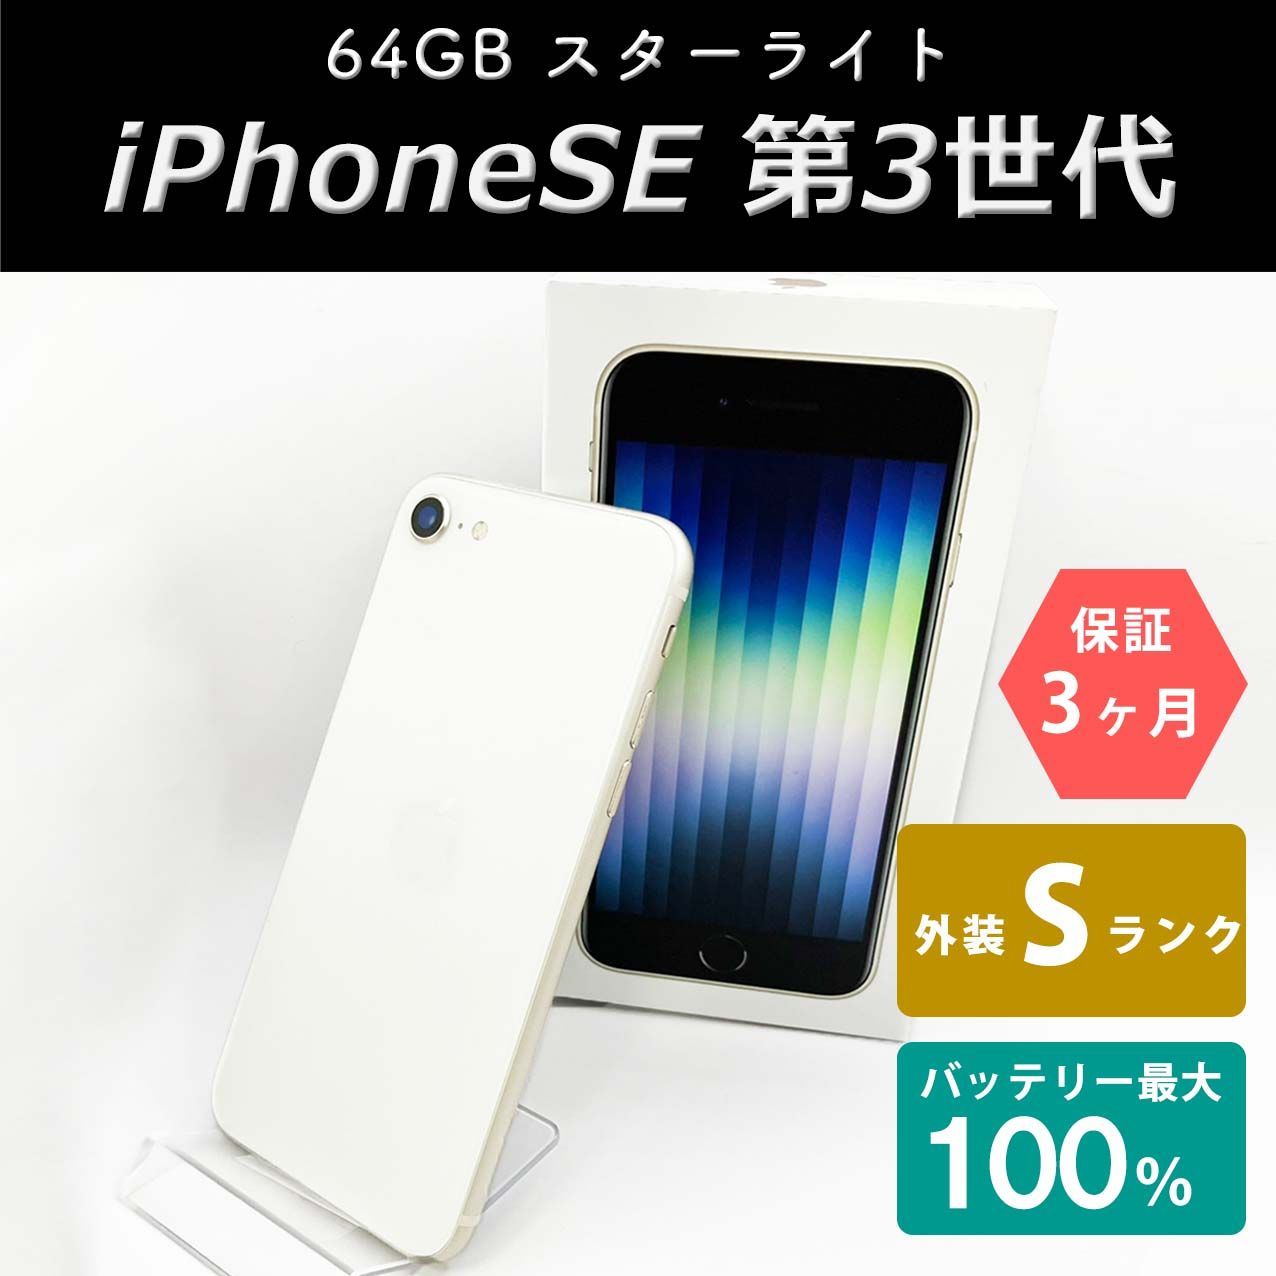 ✽ゆきこ✽様 専用 iPhone SE (第3世代) スターライト 64 GB-